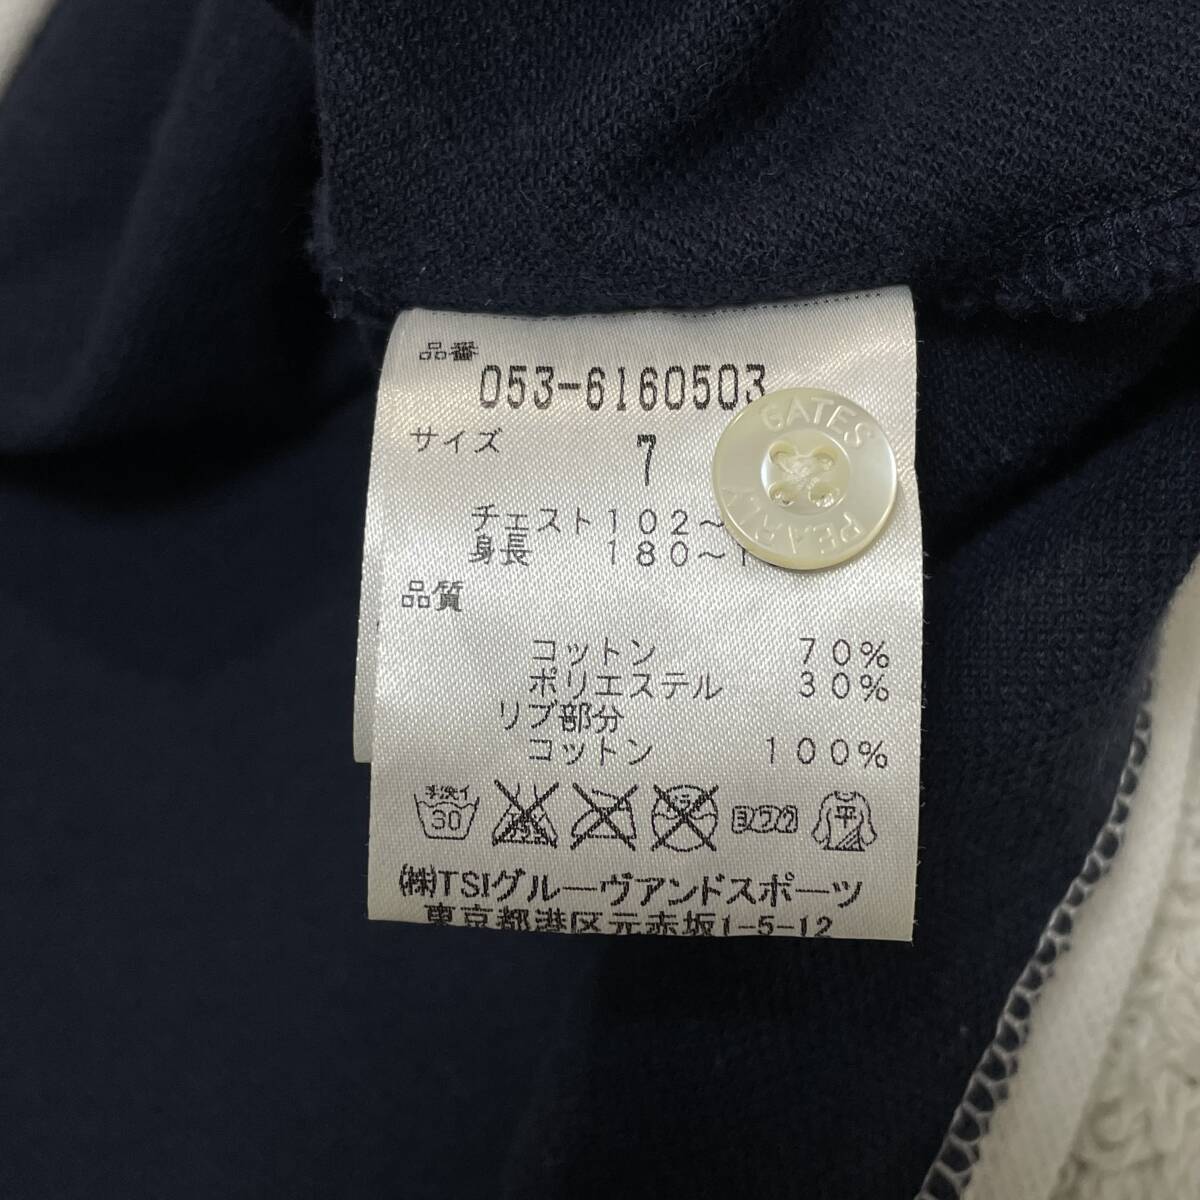 *1 иен ~ прекрасный товар PEARLY GATES Pearly Gates сделано в Японии темно-синий × белый рубашка-поло с коротким рукавом размер 7*